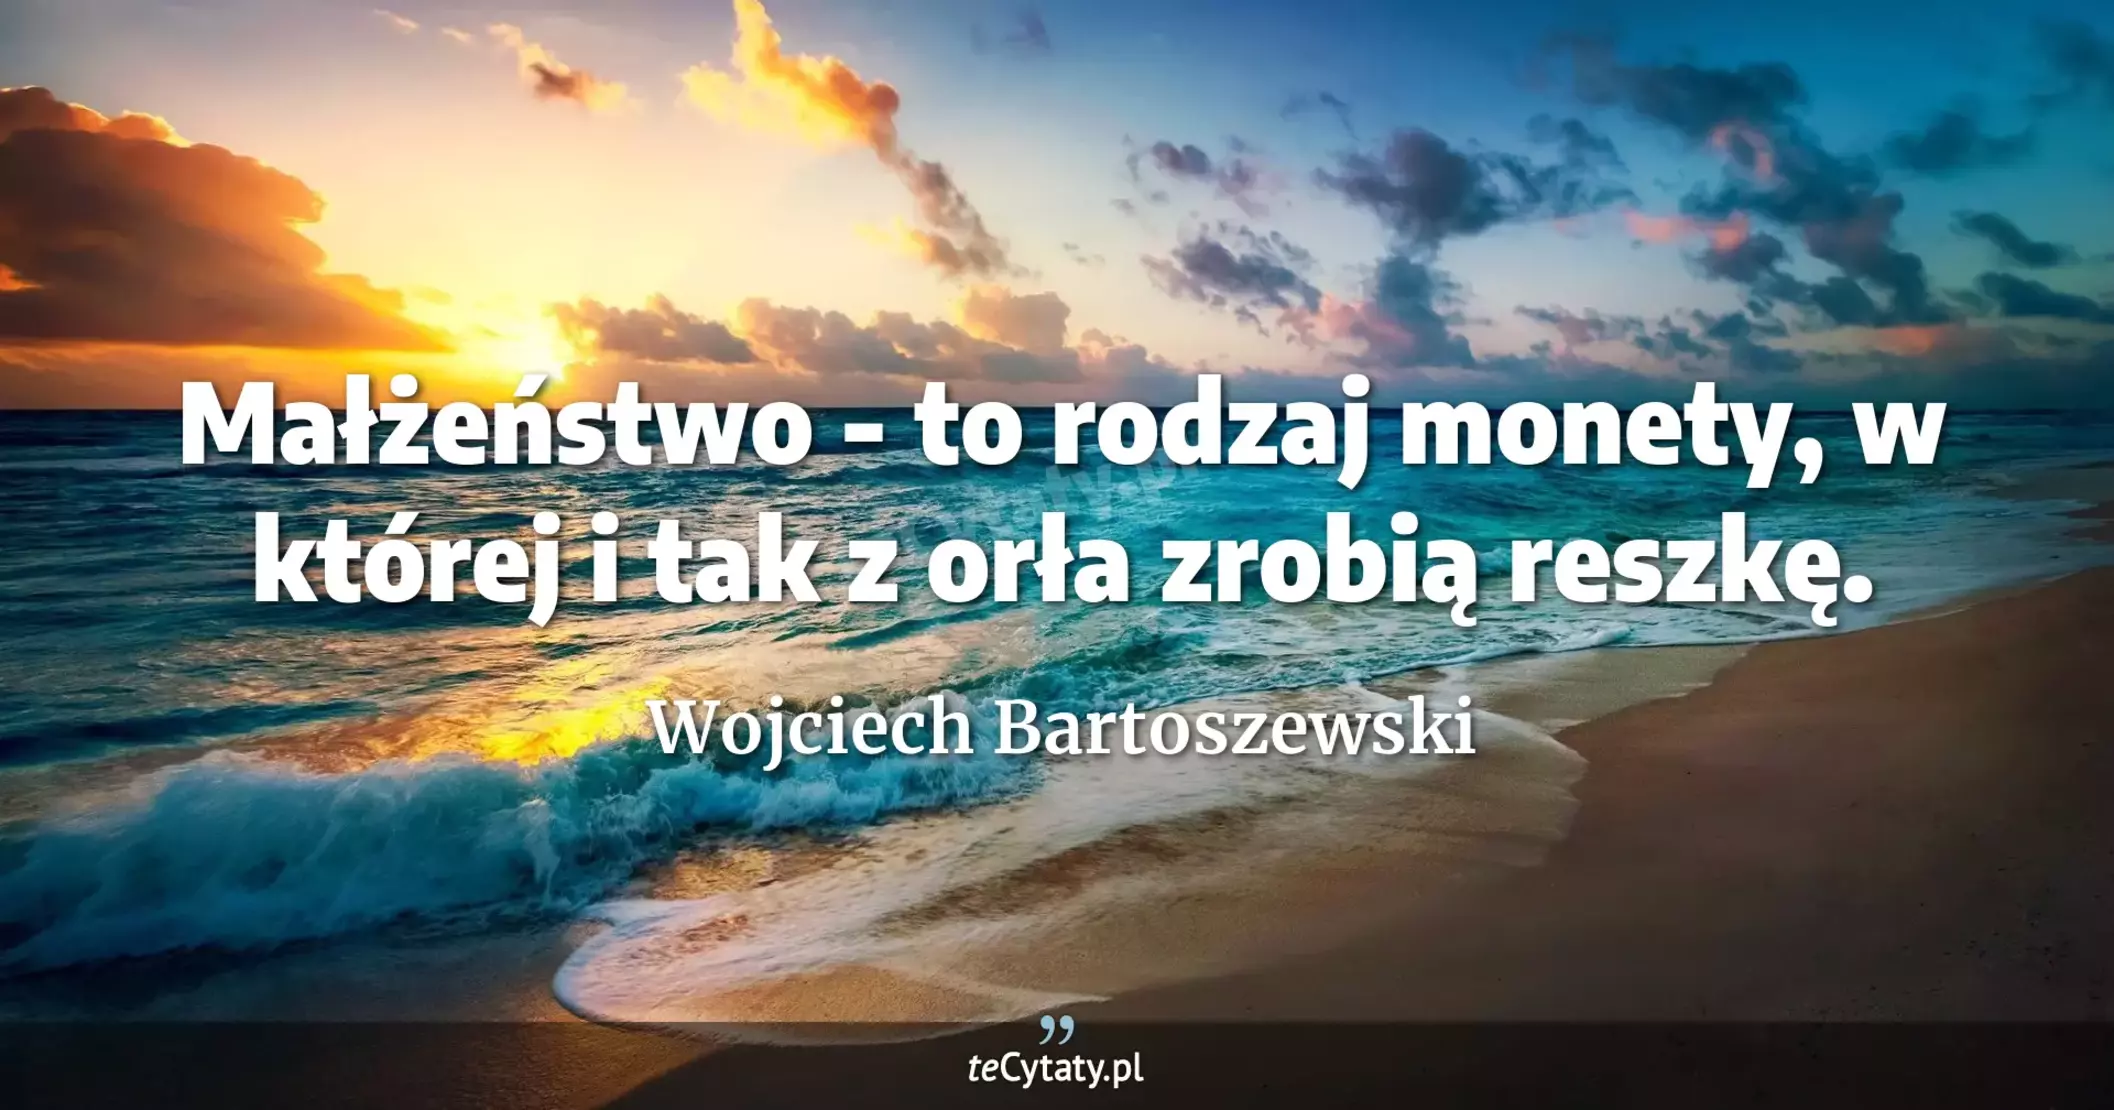 Małżeństwo - to rodzaj monety, w której i tak z orła zrobią reszkę. - Wojciech Bartoszewski